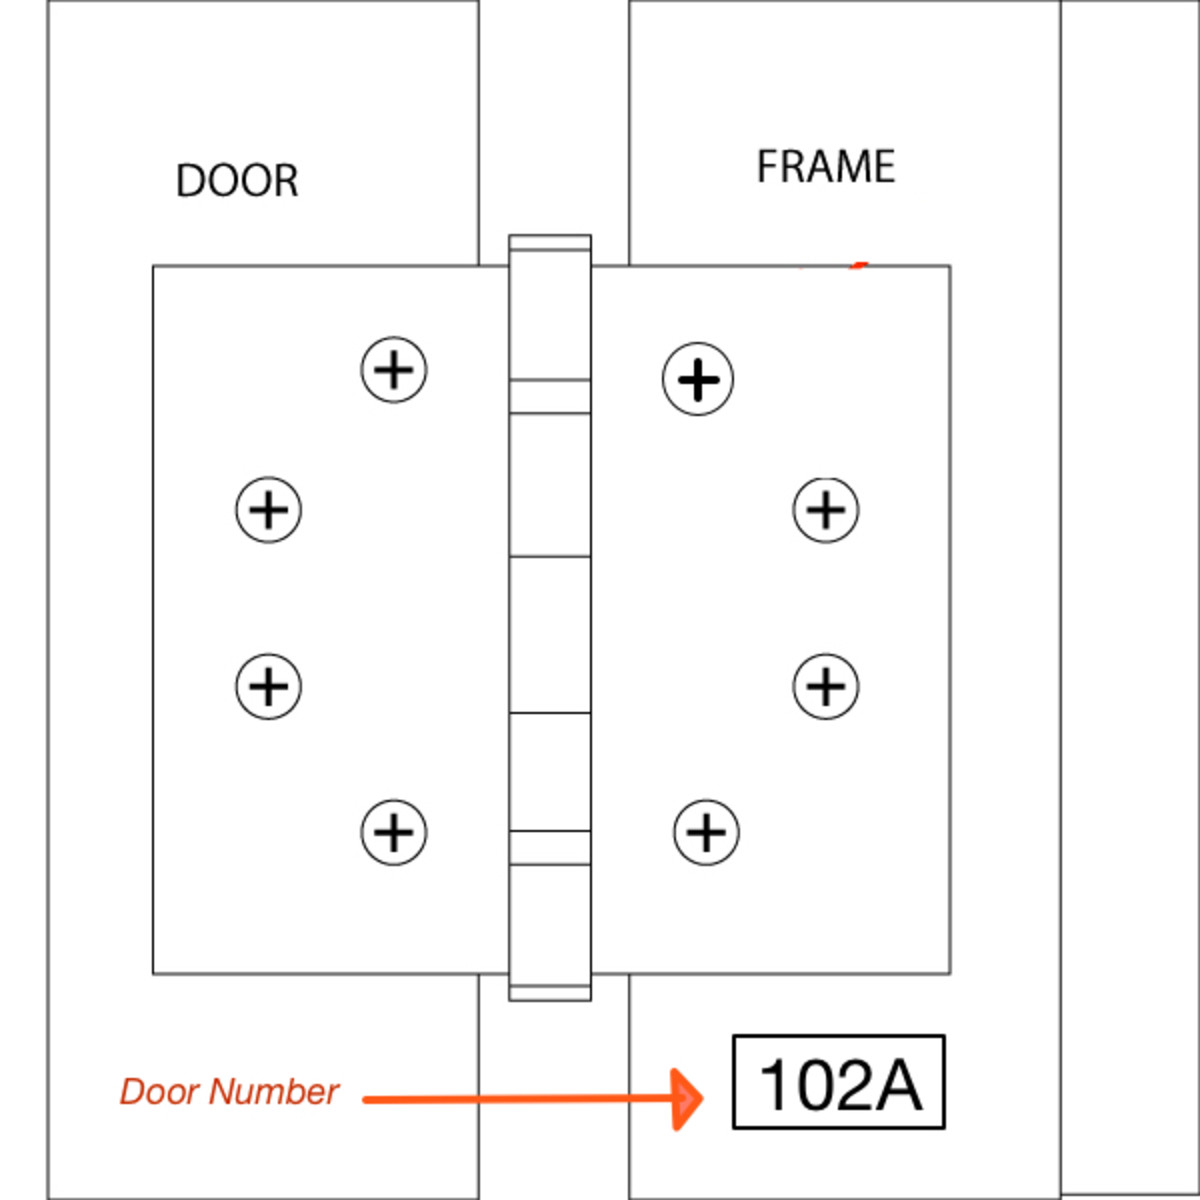 How to view the applied door number with the door open.